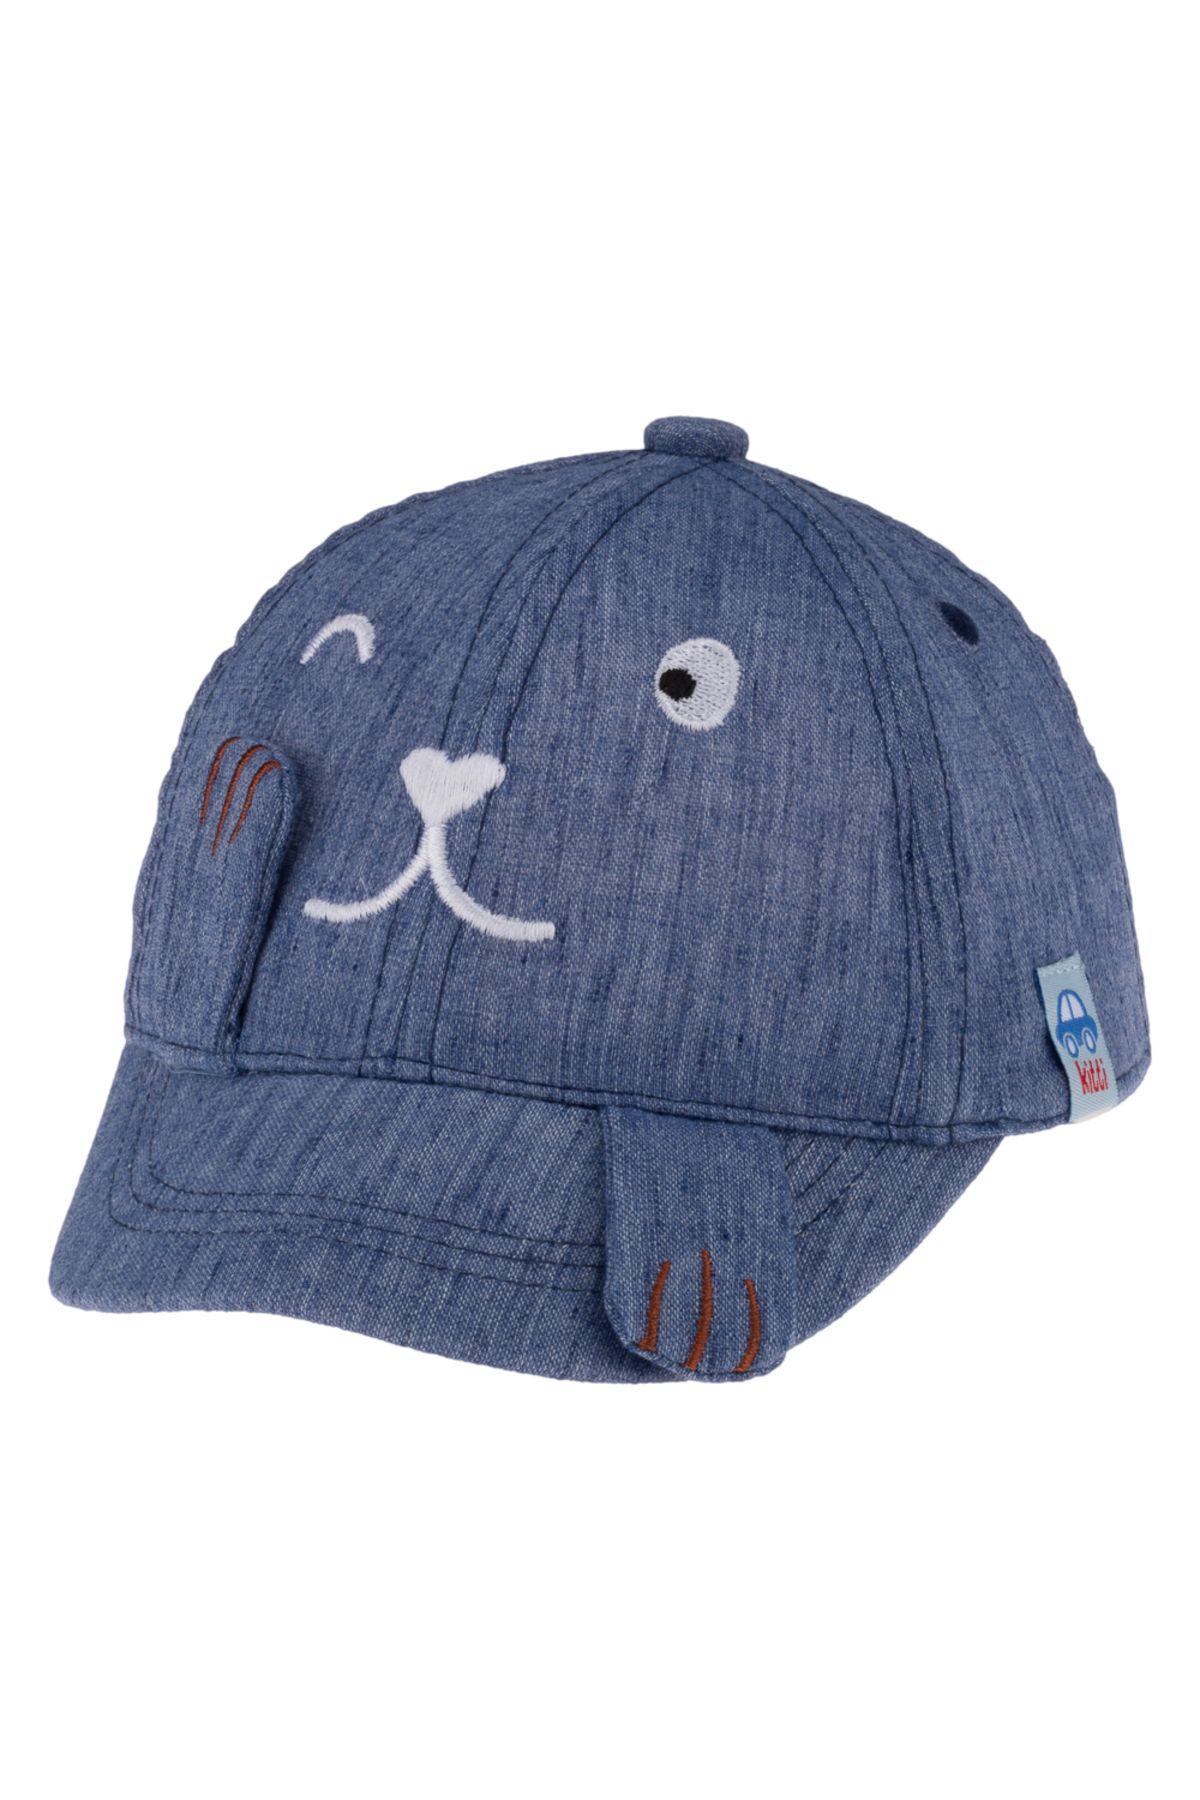 Kitti Aylık Erkek Şapka (0-18 AY) Y24010-03 Koyu Mavi